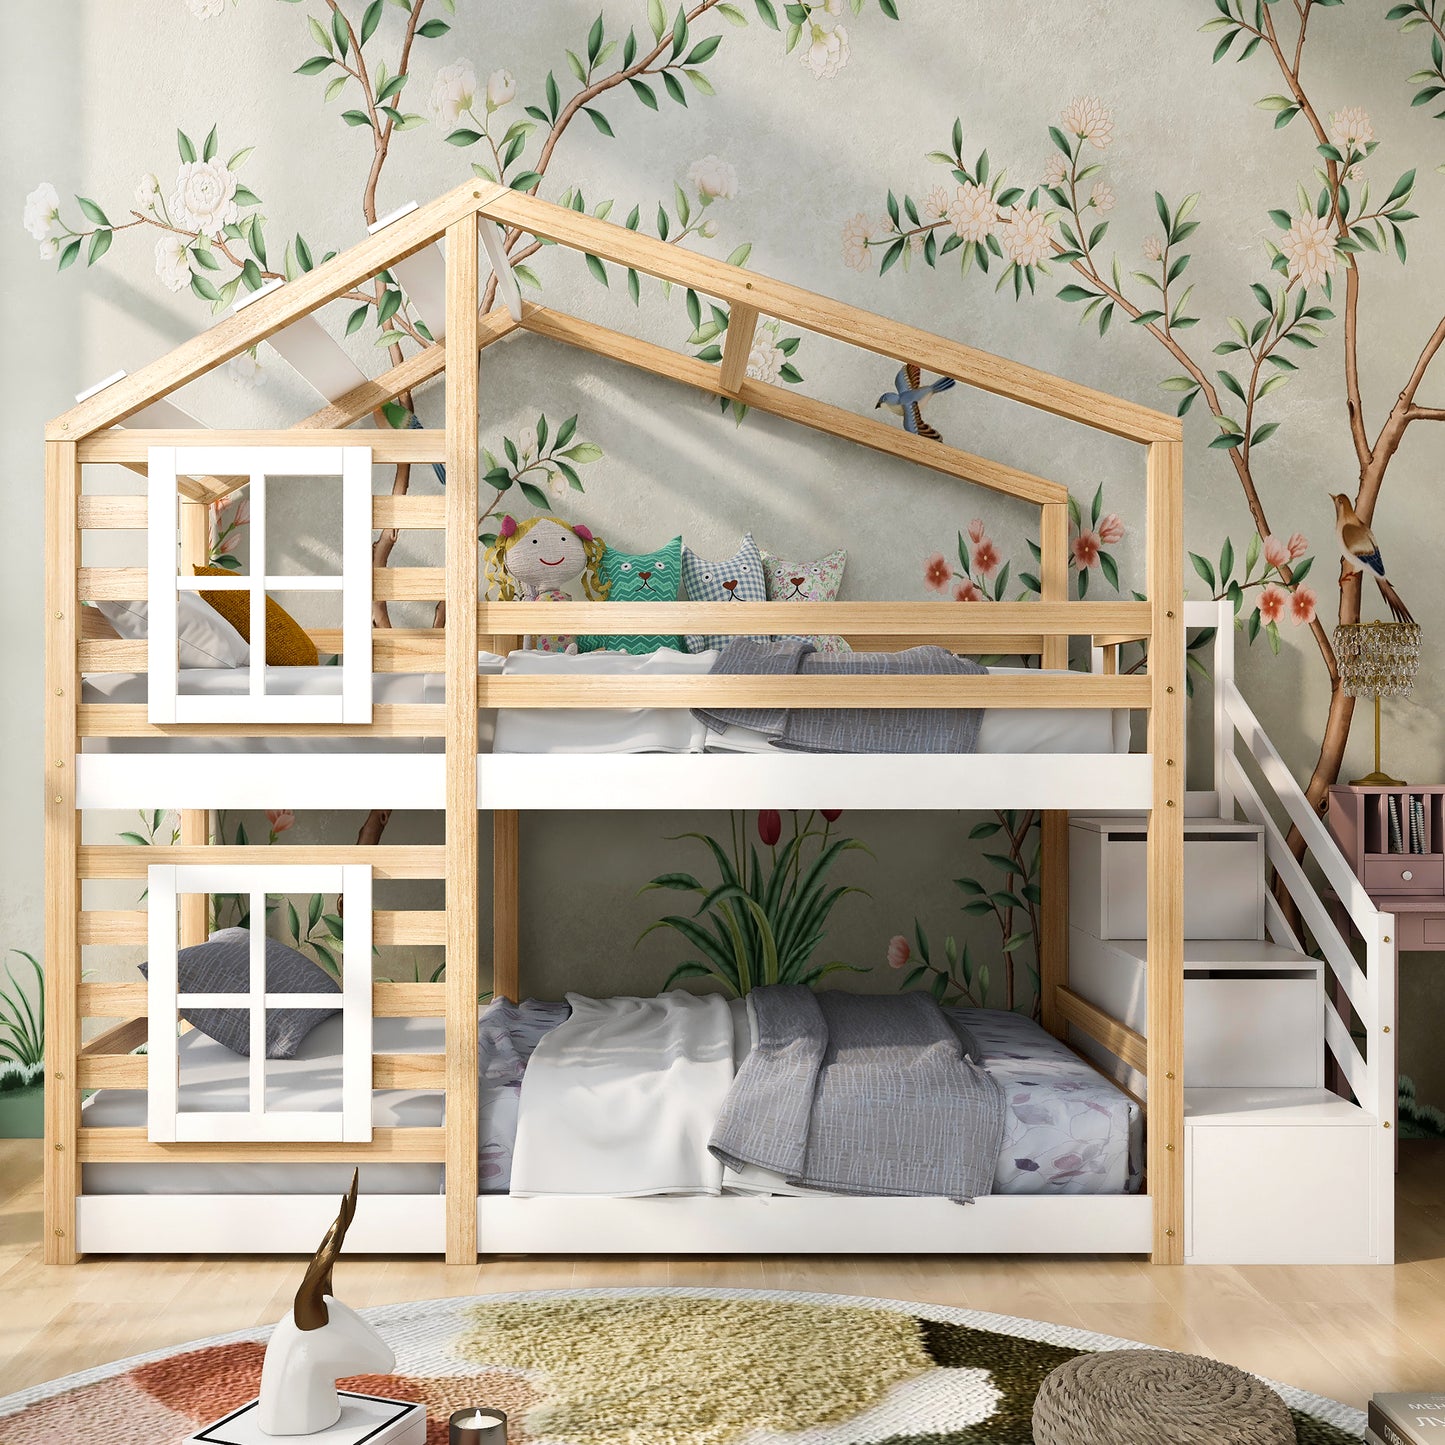 Barnsäng,Säng90 x 200 cm, loft säng för barn- 2x lamellat ram- natur & vit